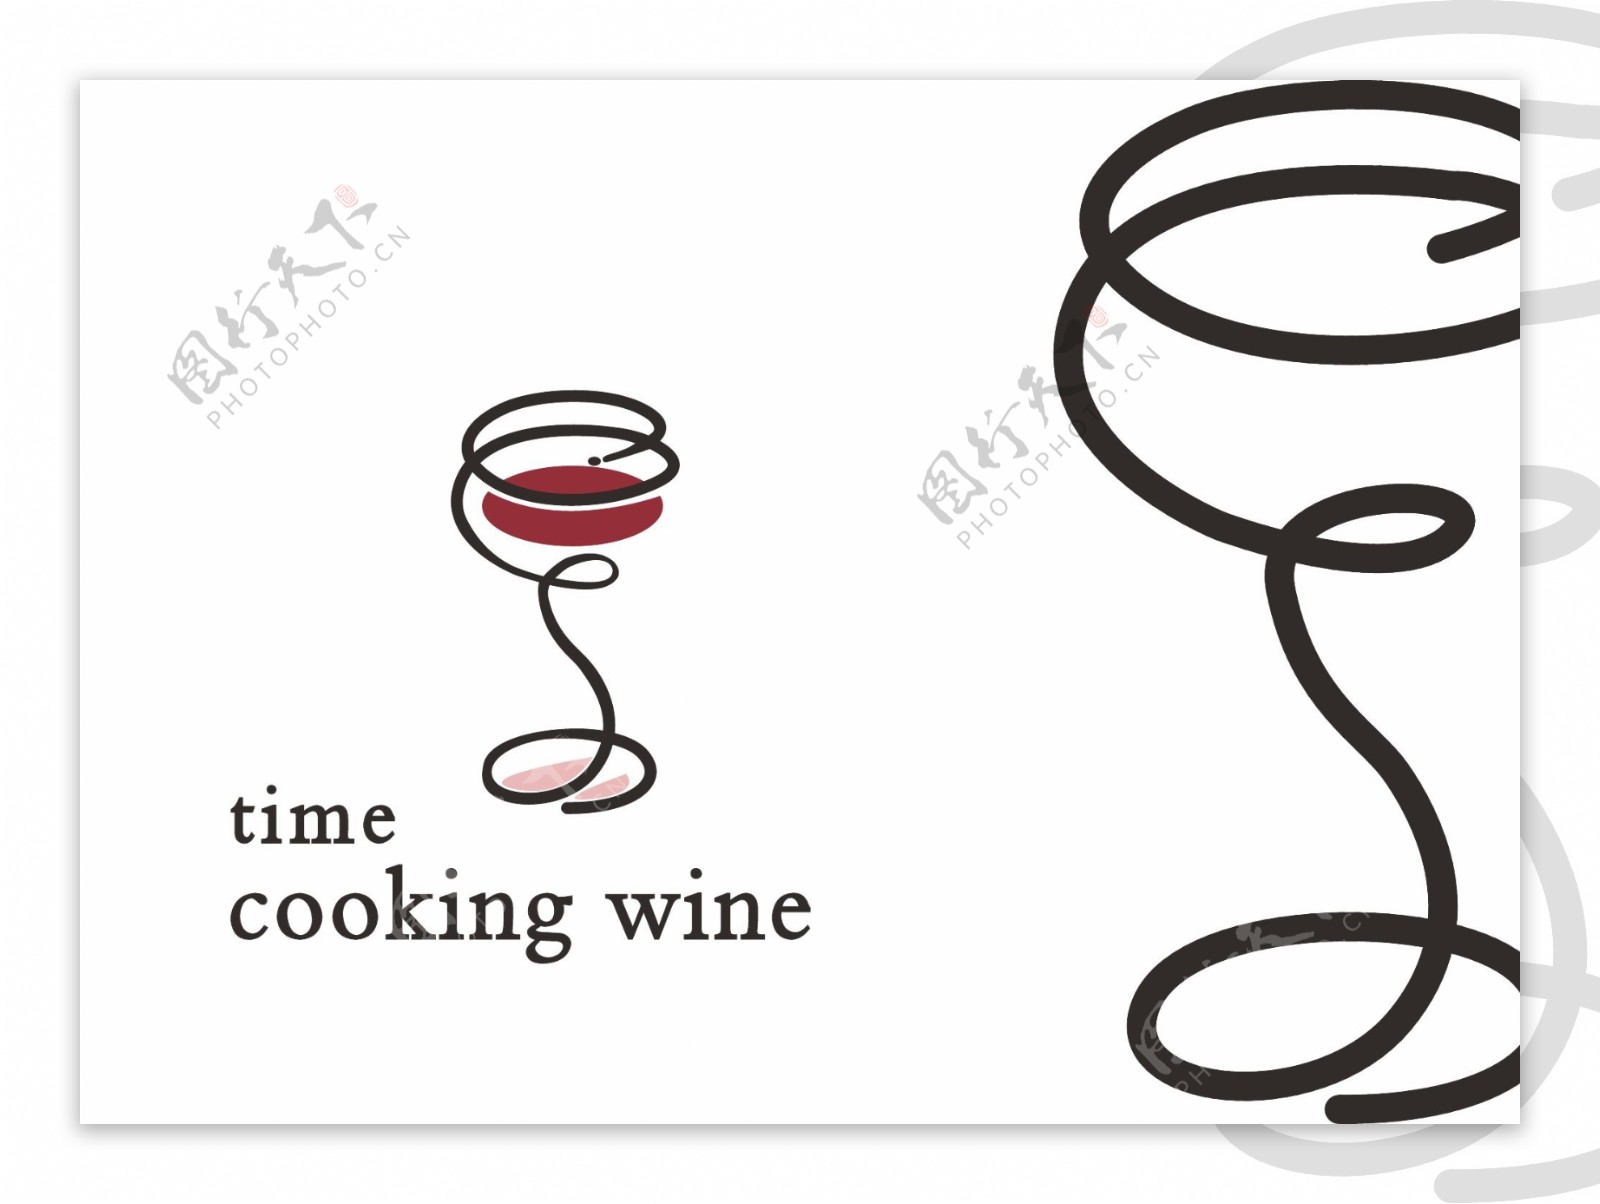 时光煮酒logo图片